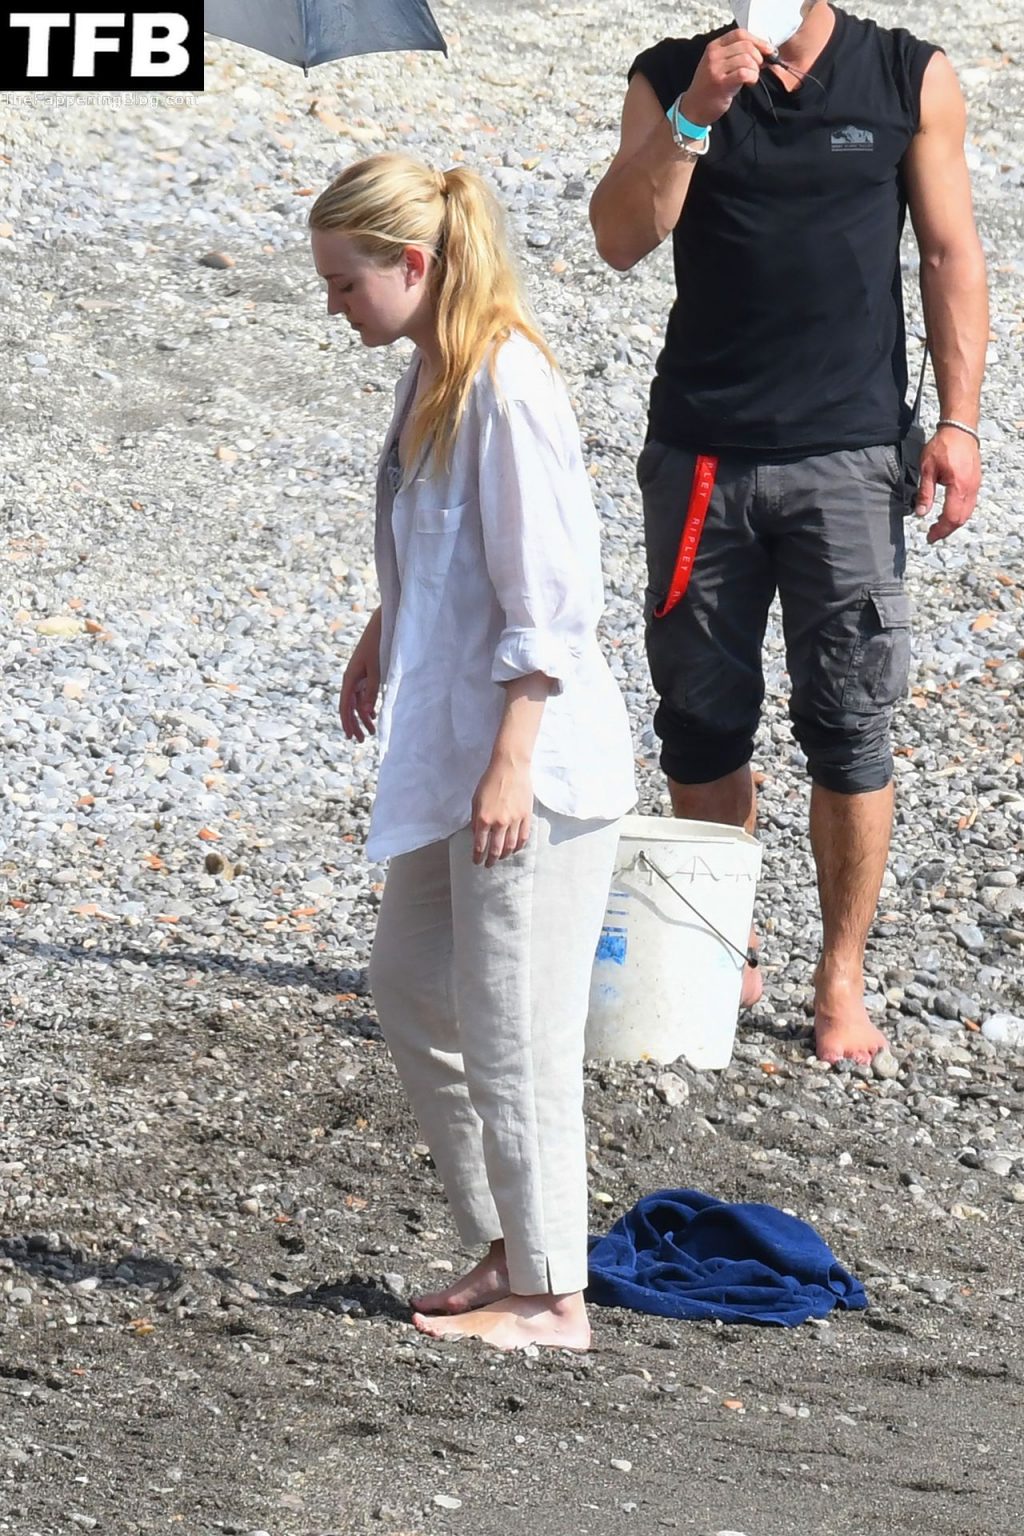 Dakota Fanning Look Cute in a Swimsuit Filming “Ripley” in Strani (48 Photos)